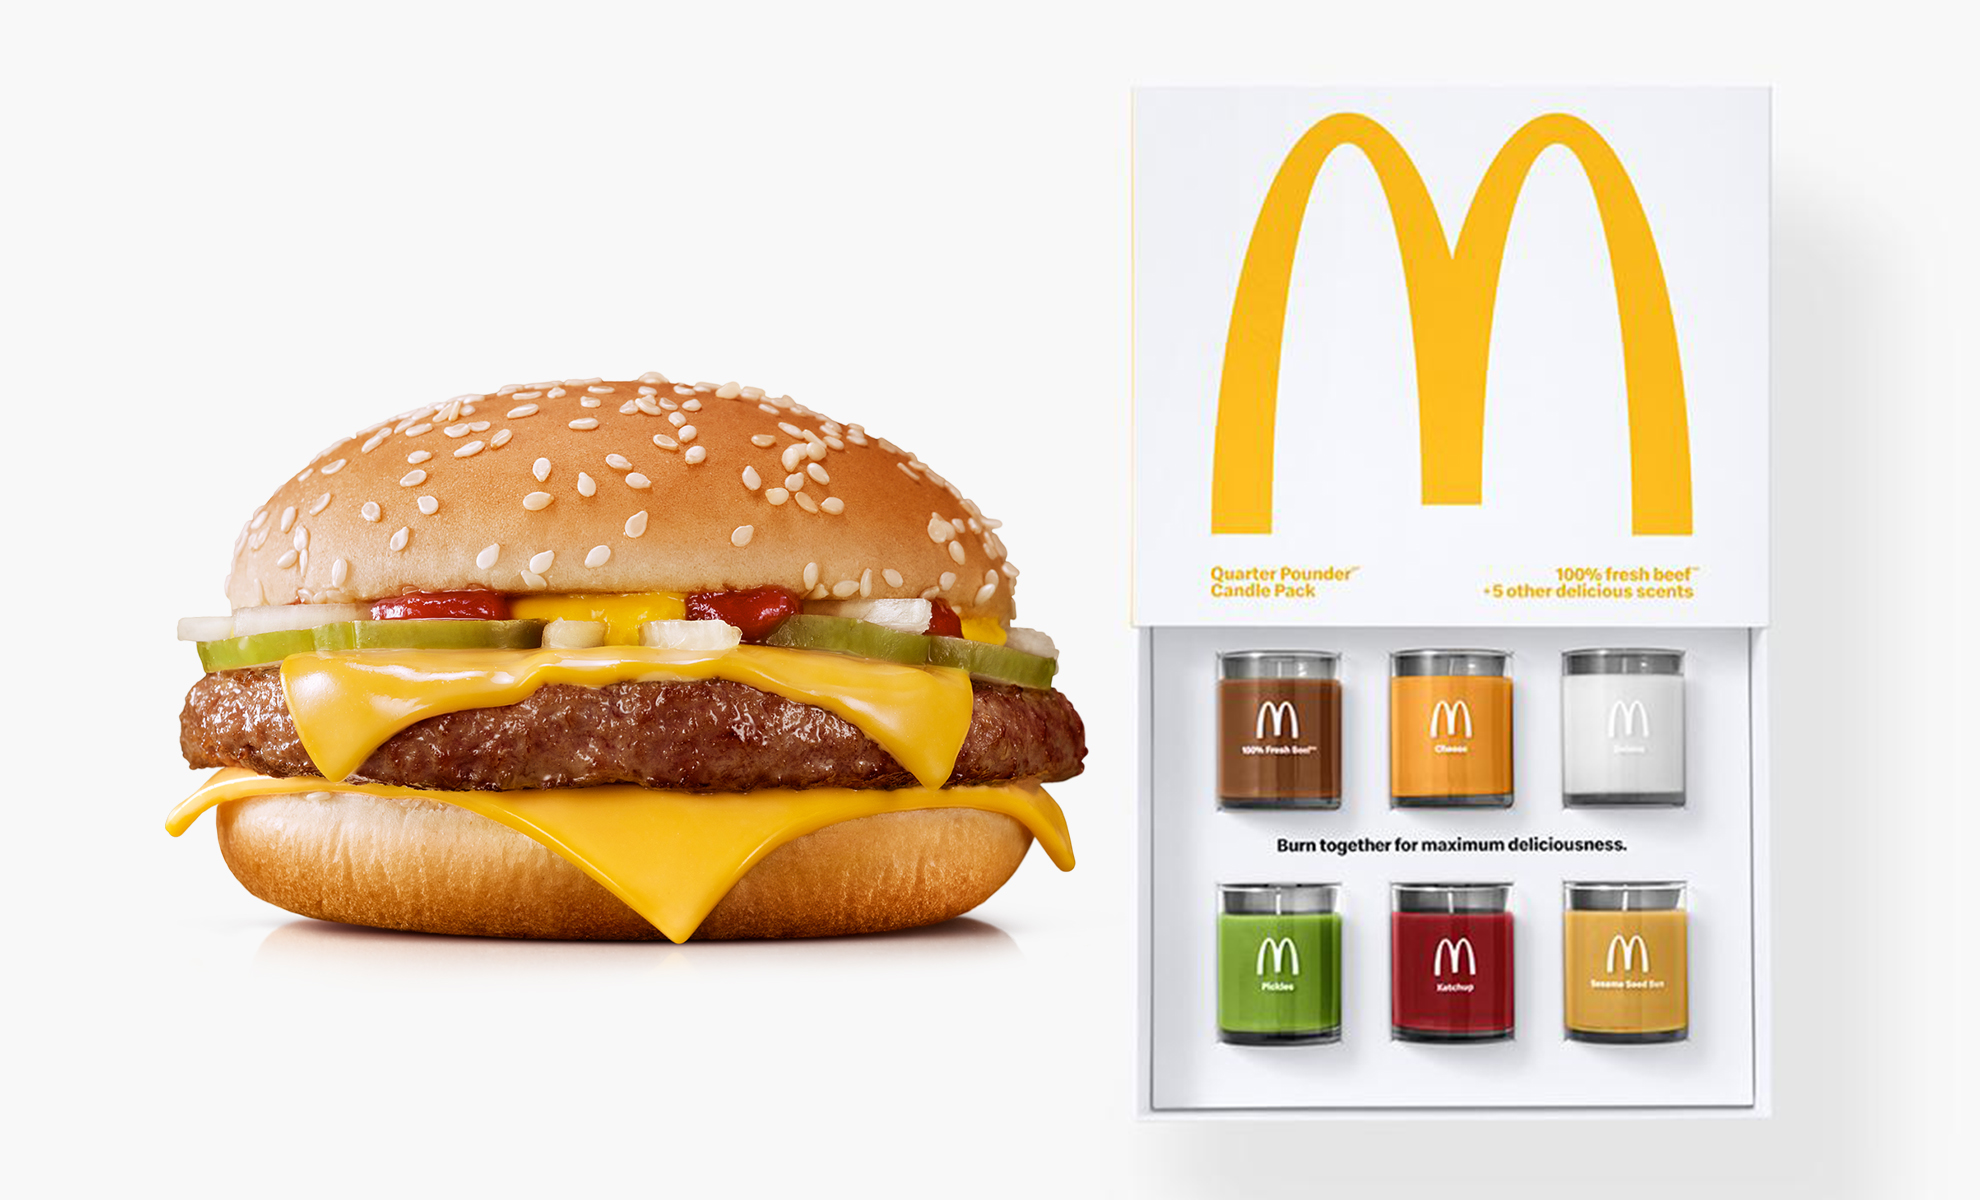 แค่กลิ่นก็ฟินแล้ว!!! McDonald เปิดตัว “เทียนหอมกลิ่นเบอร์เกอร์” ขายดีจน SOLD OUT!!!!